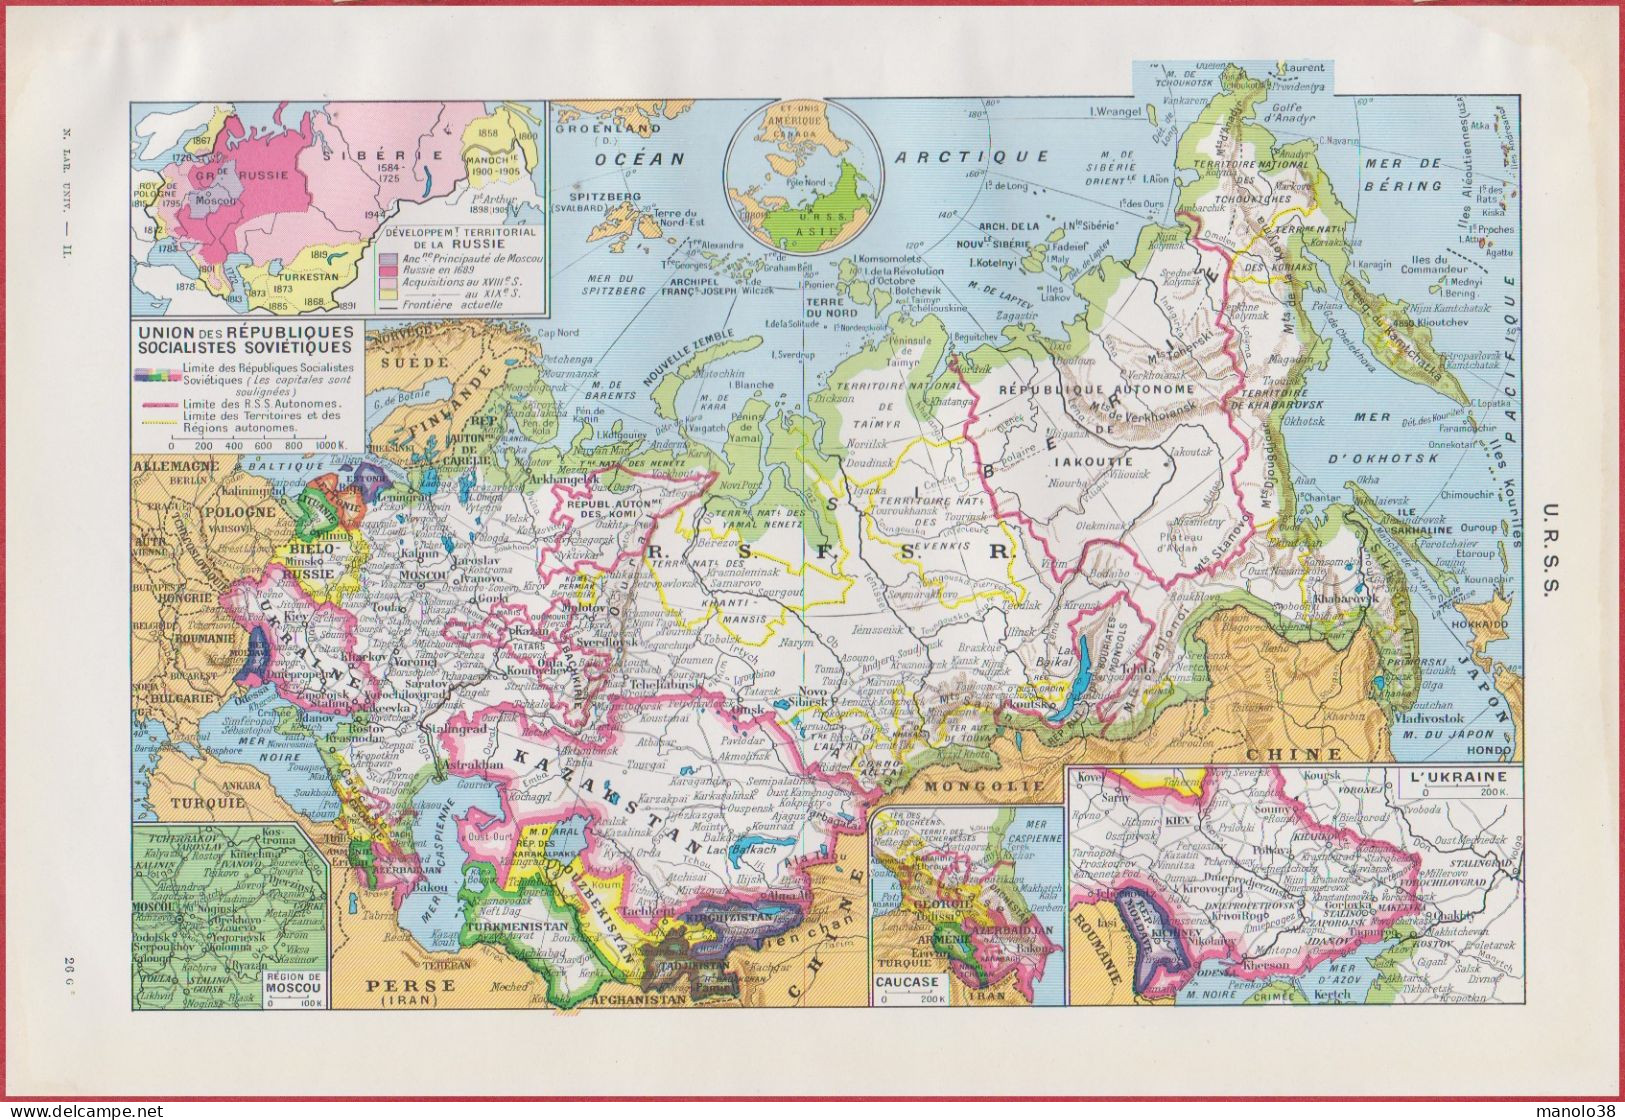 Carte De L'URSS. Russie. Ukraine. Développement Territorial. Carte économique. Divers Vues. Larousse 1948. - Historische Dokumente